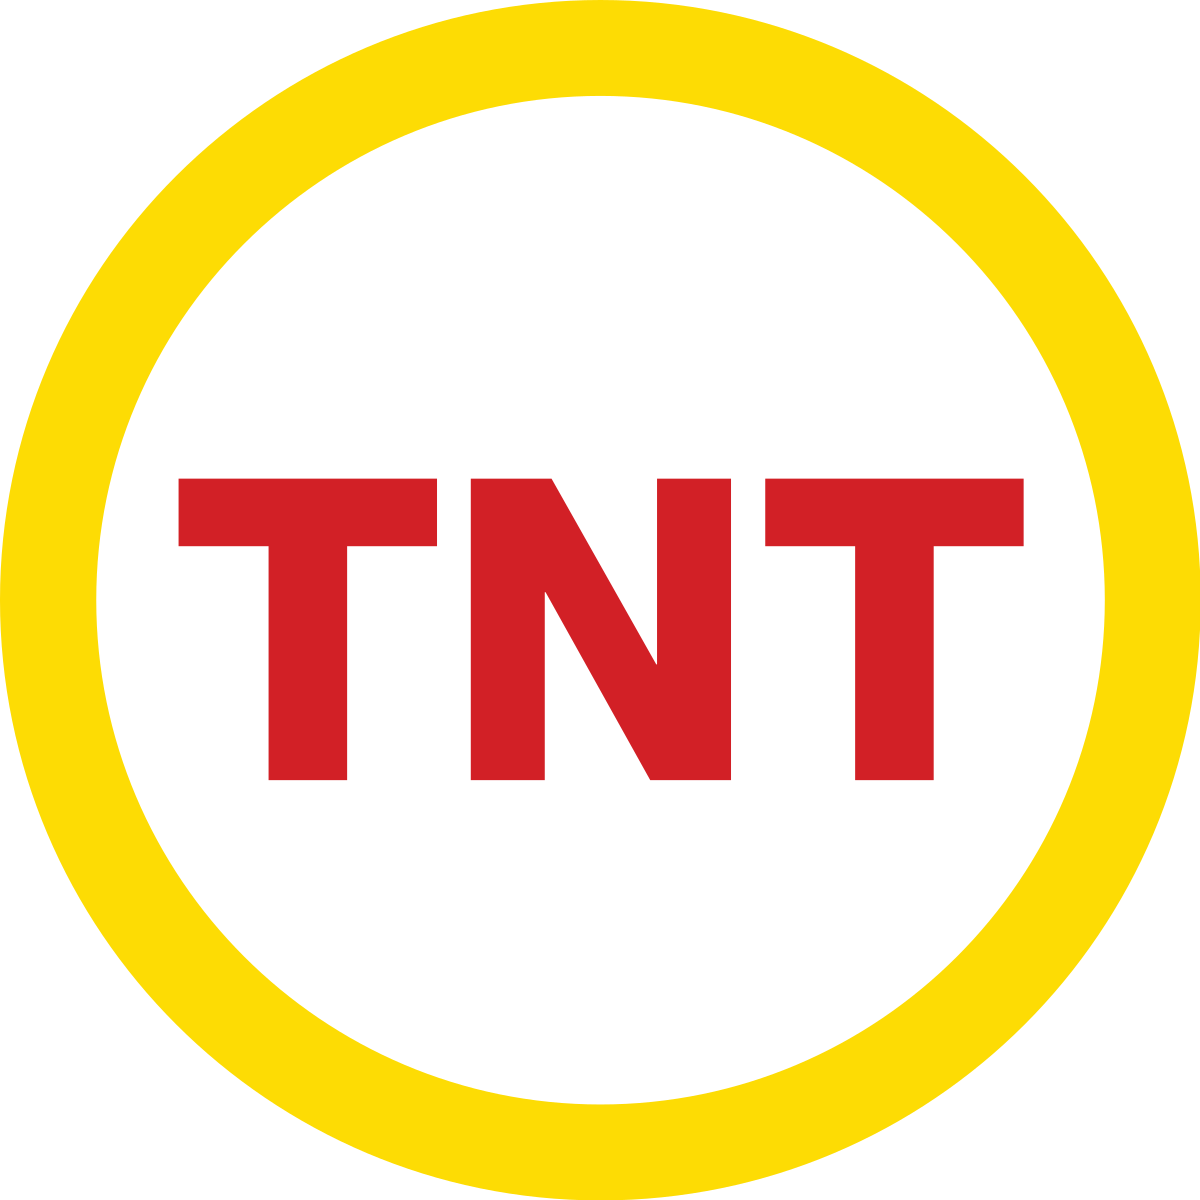 Imagem do TNT